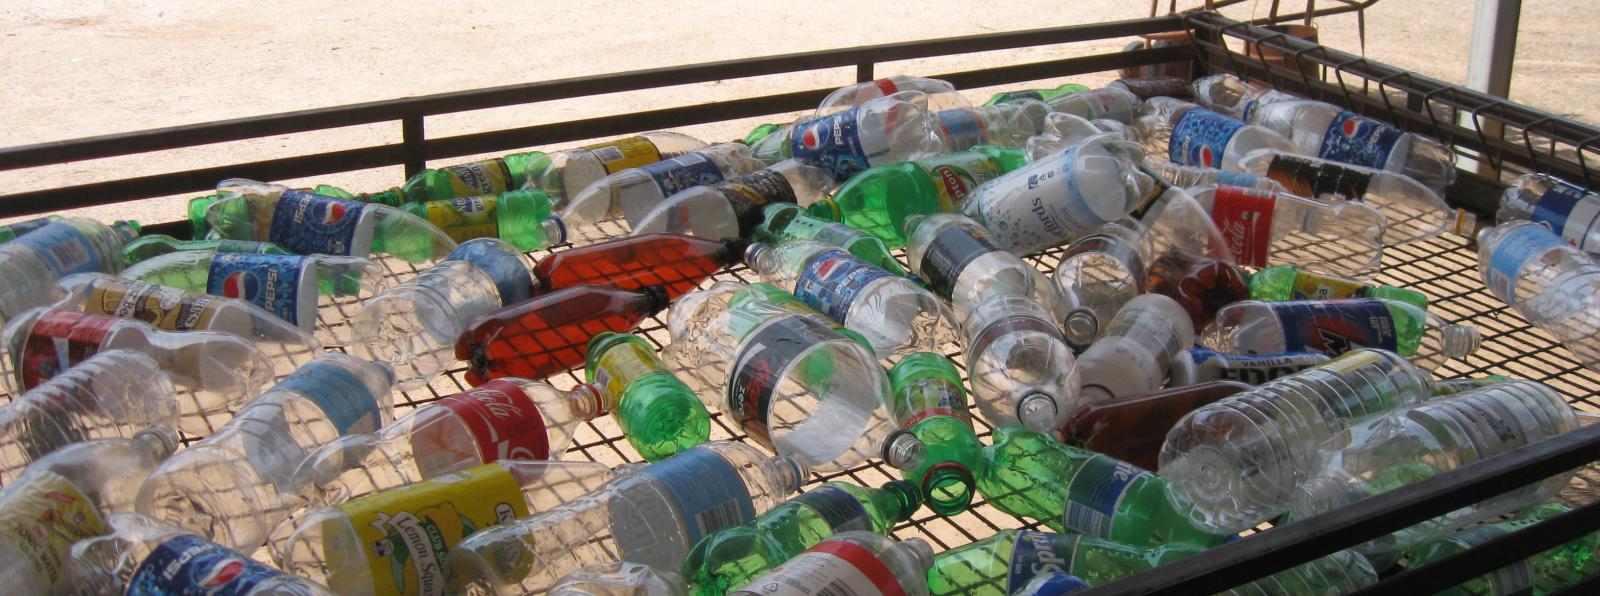 plastic bottles on sorting table